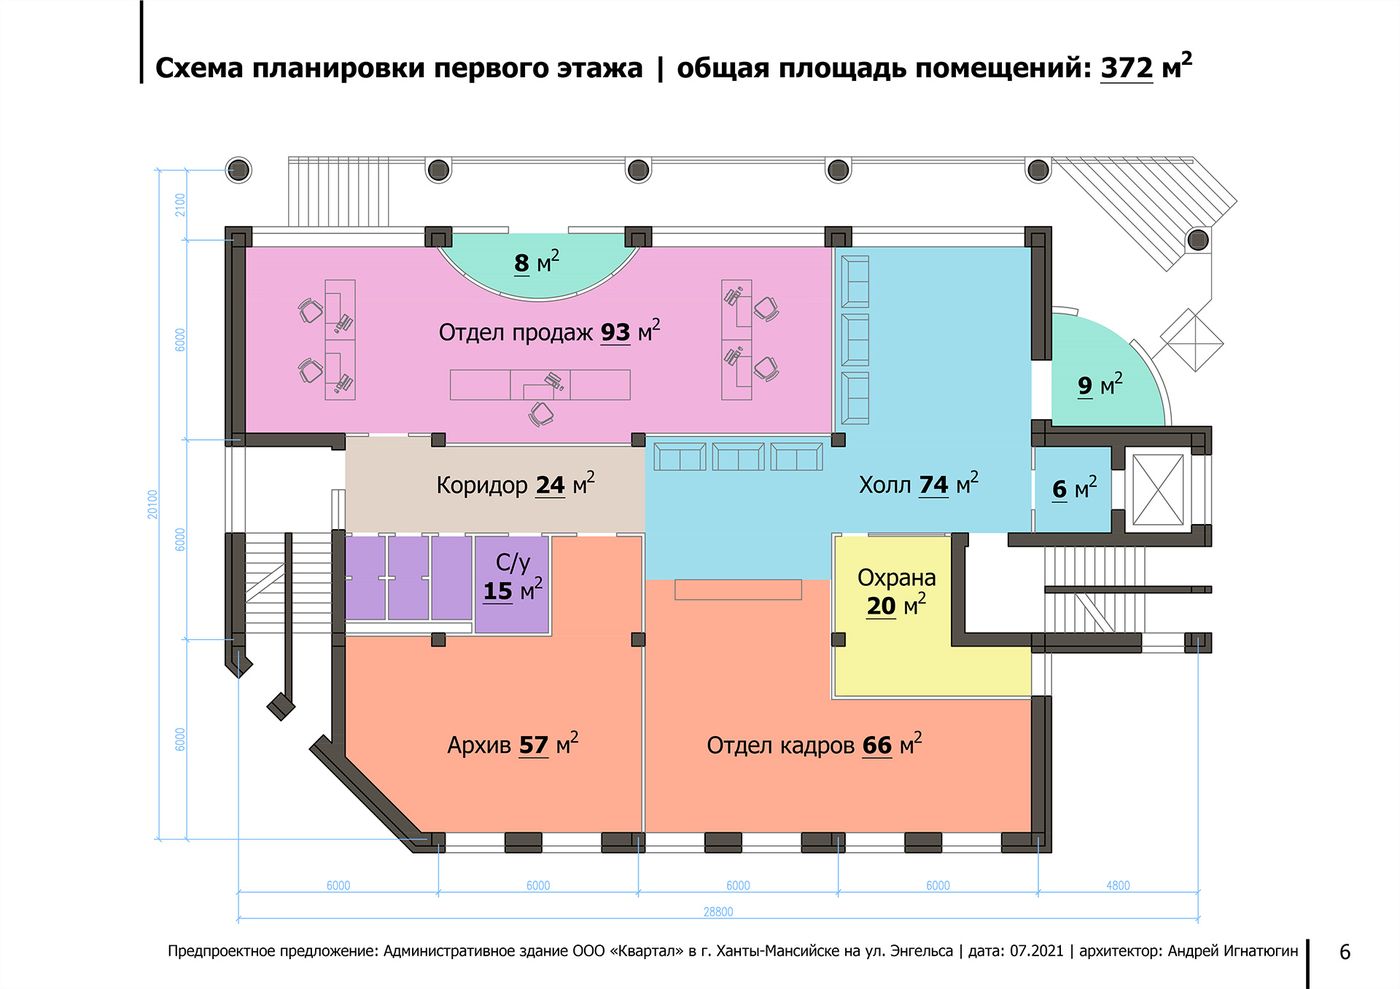 Схема планировки первого этажа